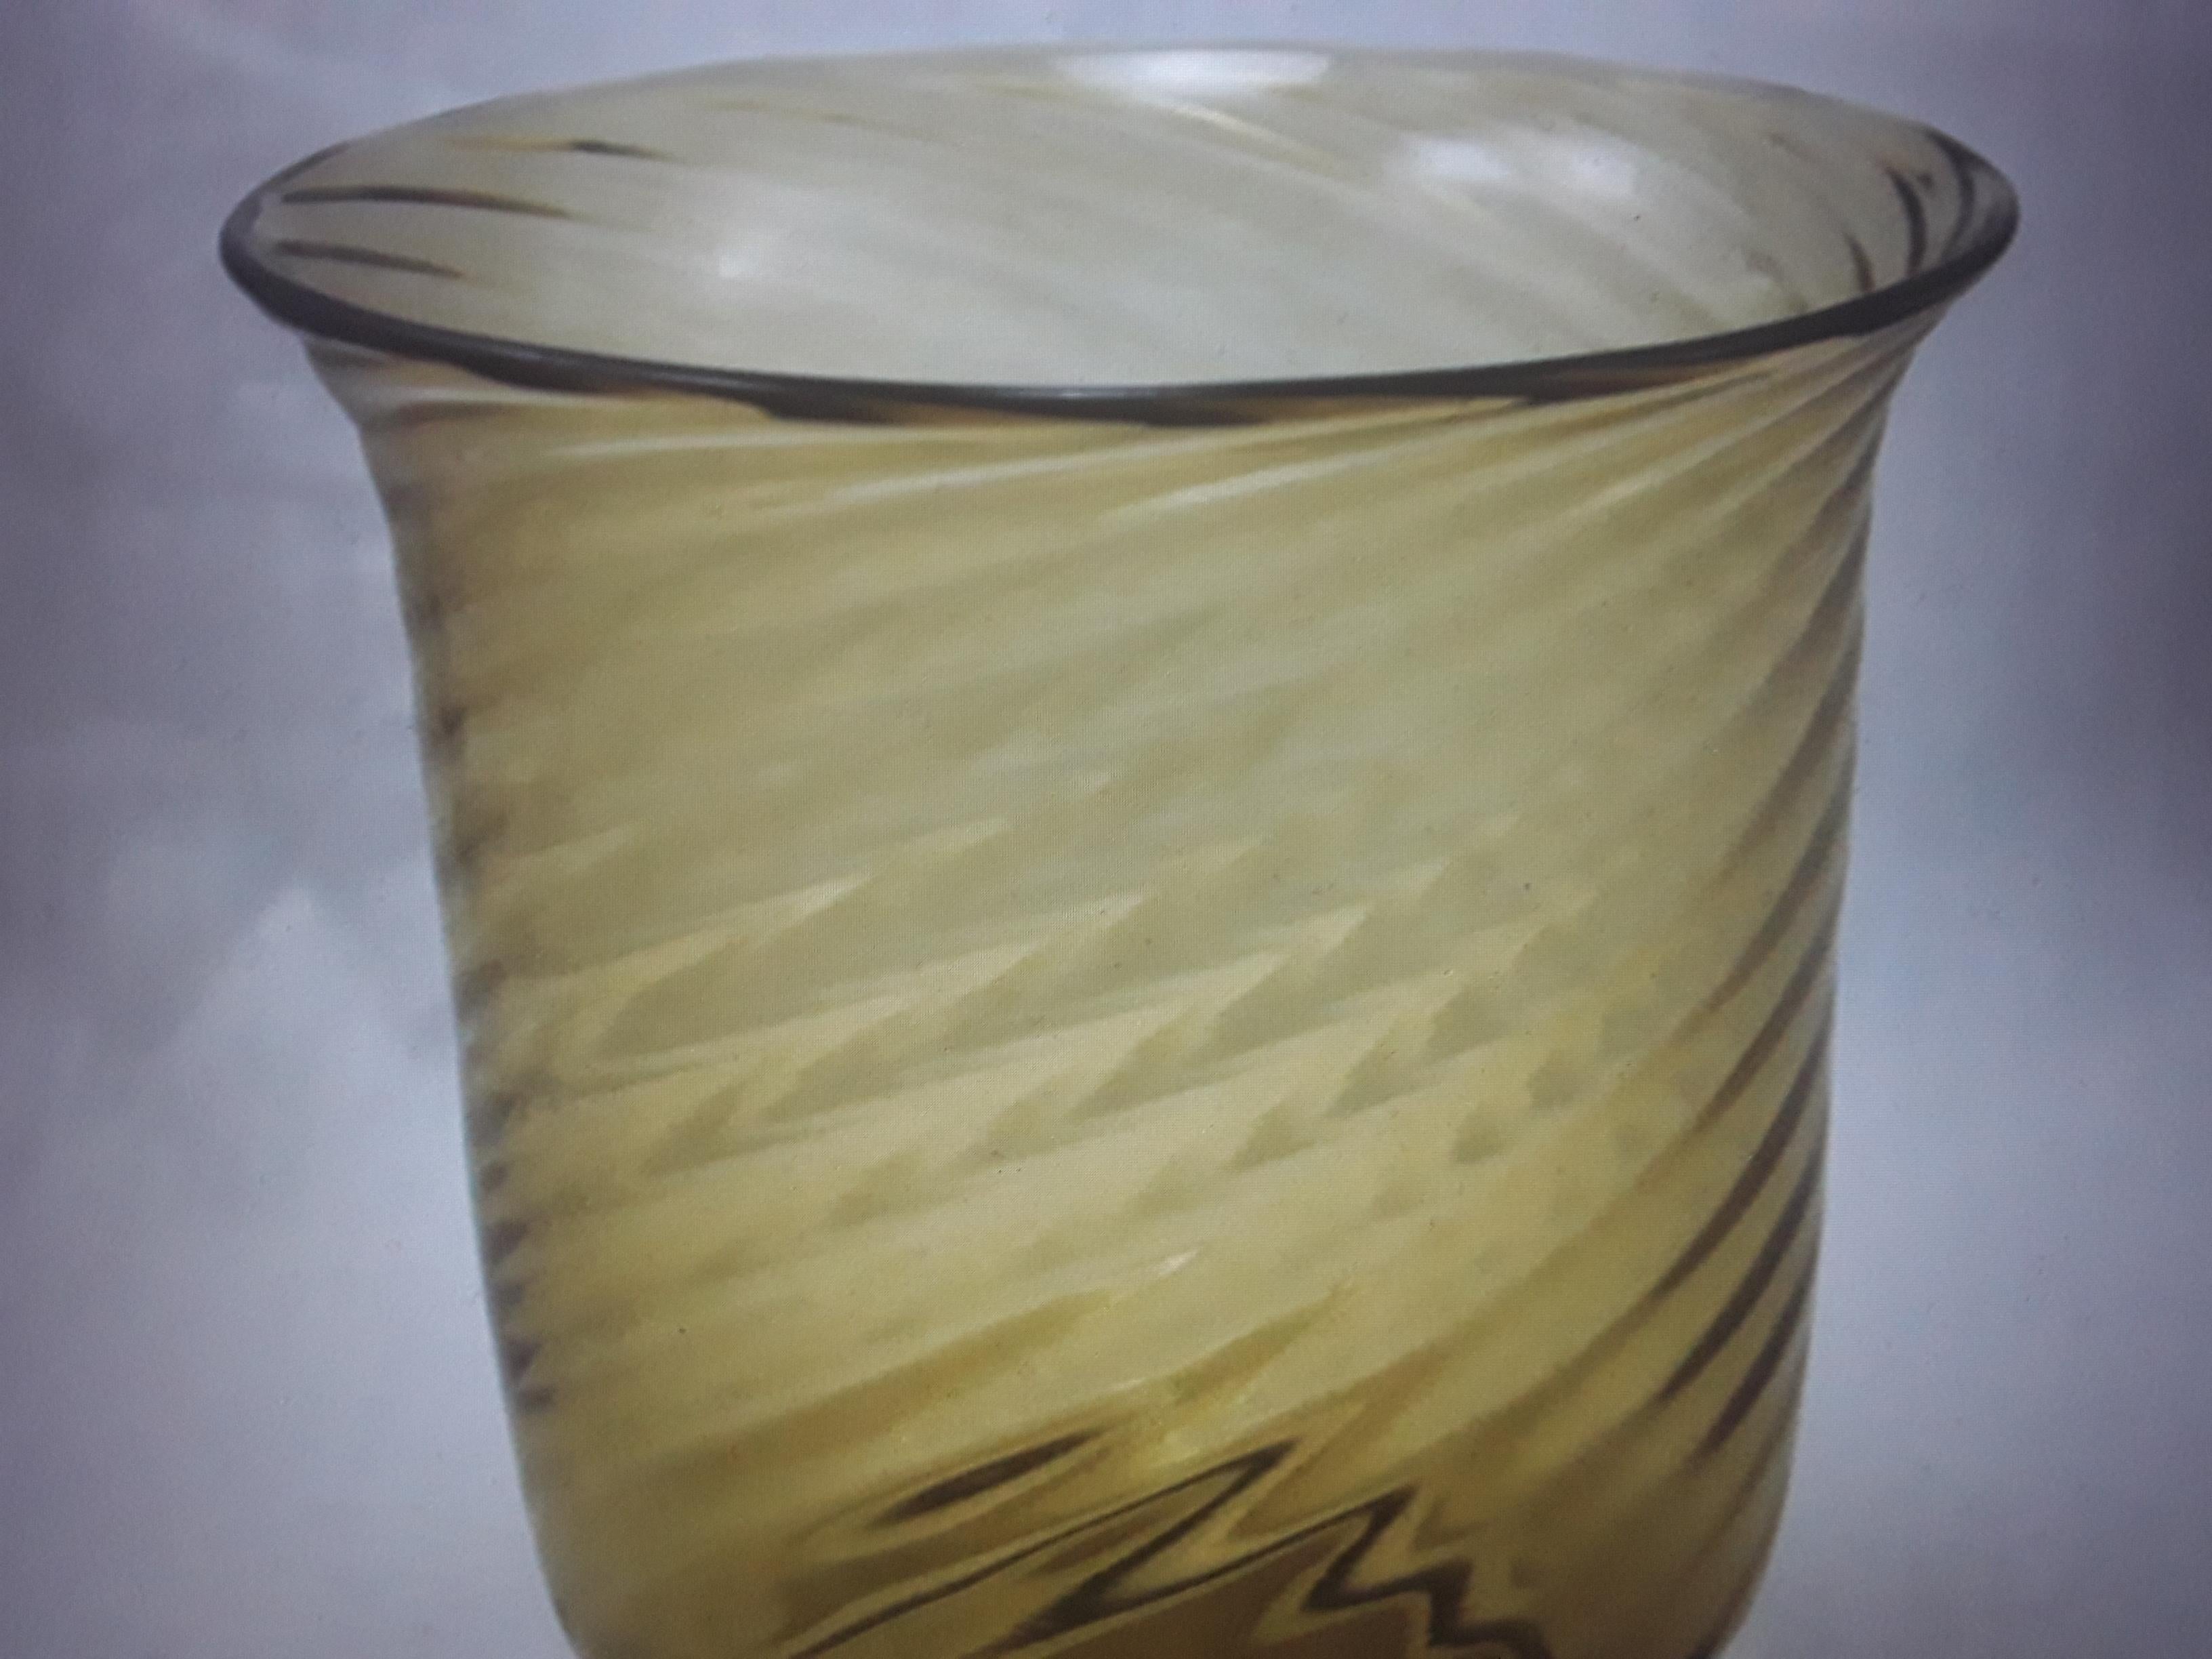 Vase Art Déco Frederic Carders Steuben Art Glass Swirl Pattern des années 1930. Couleur ambre. Le dessous du vase présente des rayures qui ne sont pas visibles lorsque le vase est à la verticale.